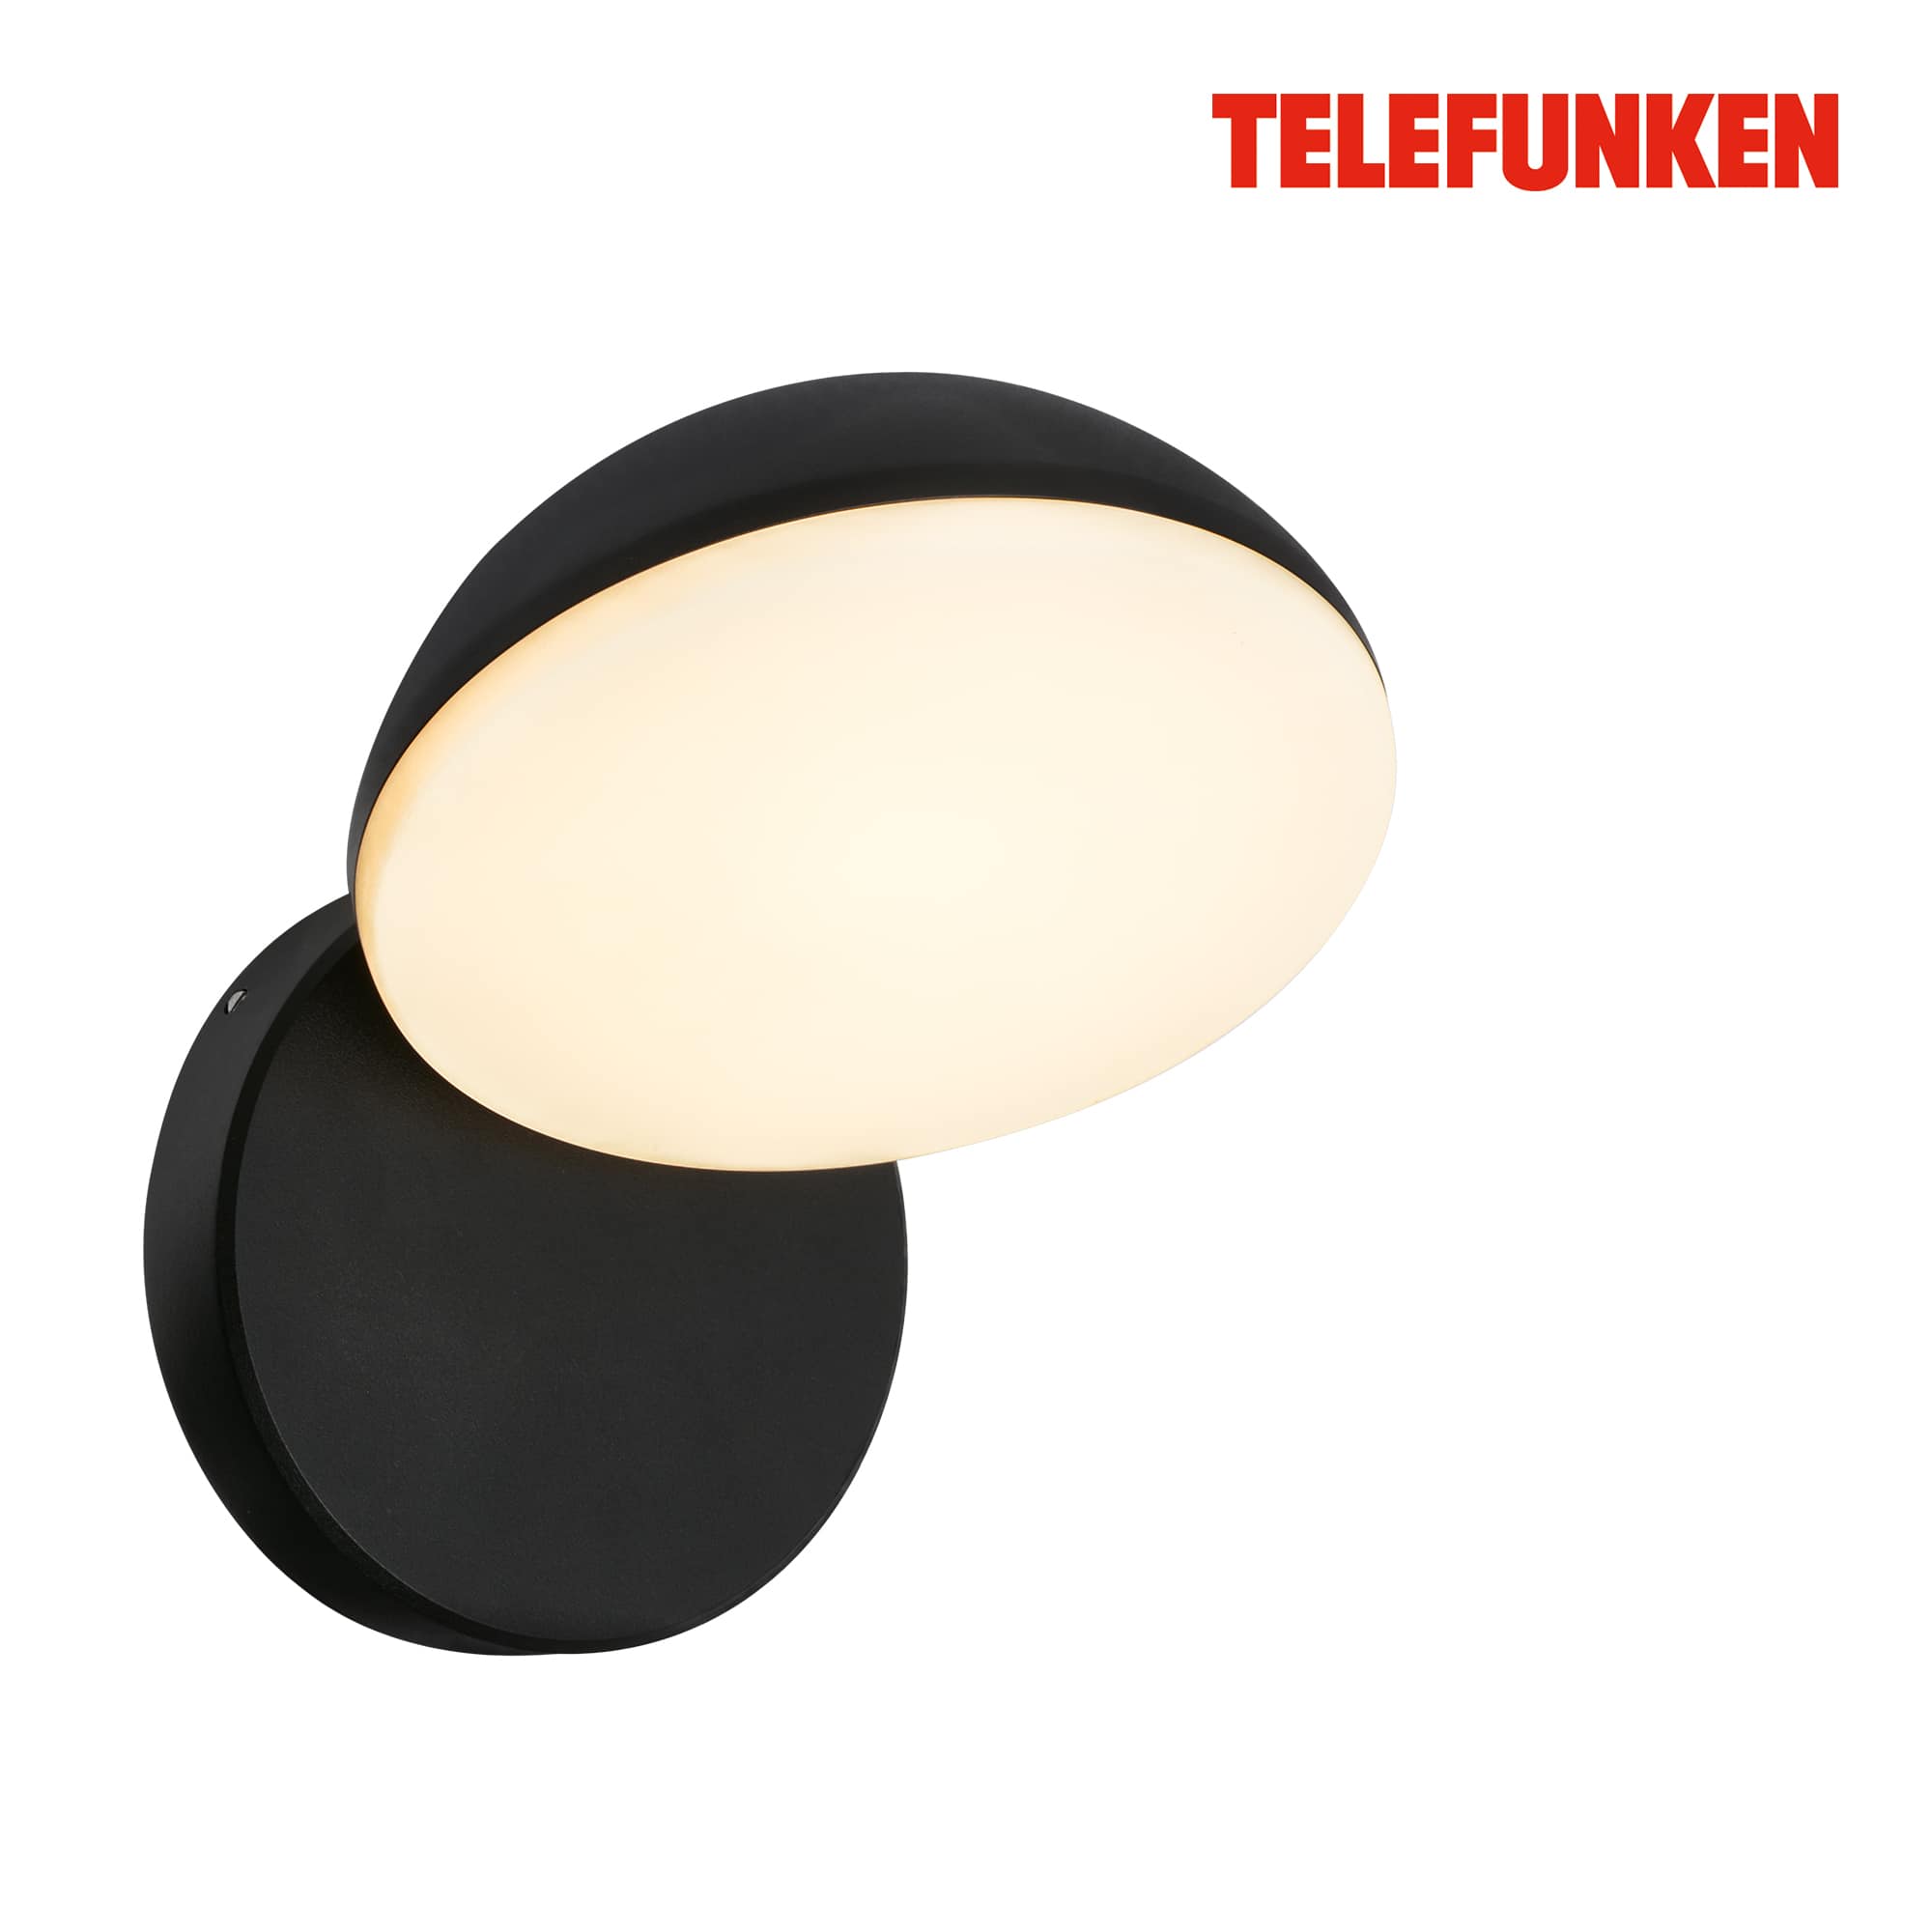 Lampada da parete Telefunken LED, protezione dagli spruzzi e dalla polvere, On/Off